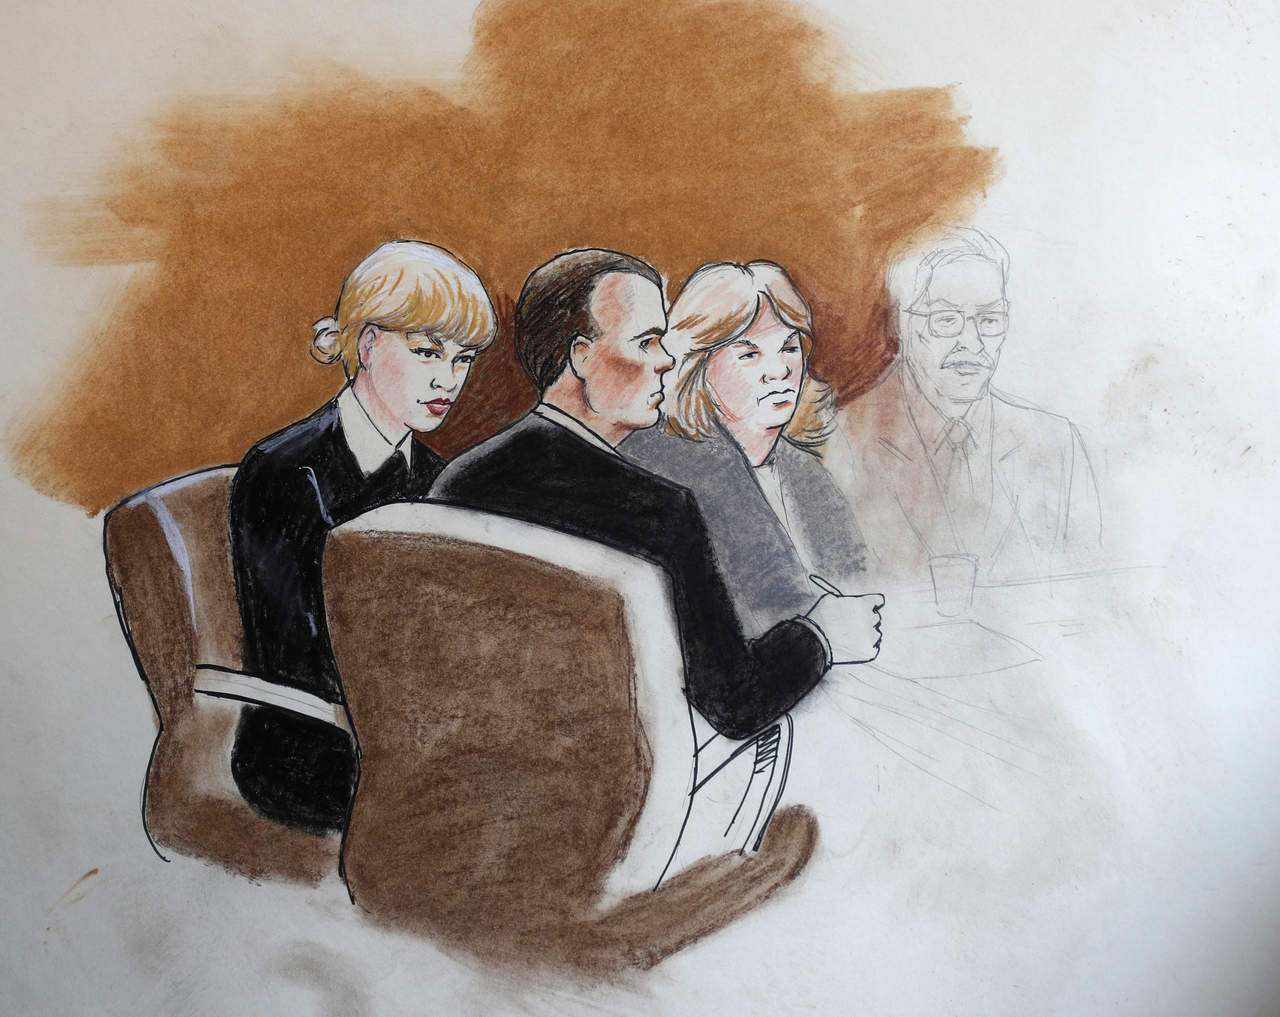 El litigio busca zanjar una serie de demandas cruzadas entre Swift y Mueller desde que ambos coincidieran en una sesión de fotos antes de un concierto de la cantante en Denver en 2013. (AP)